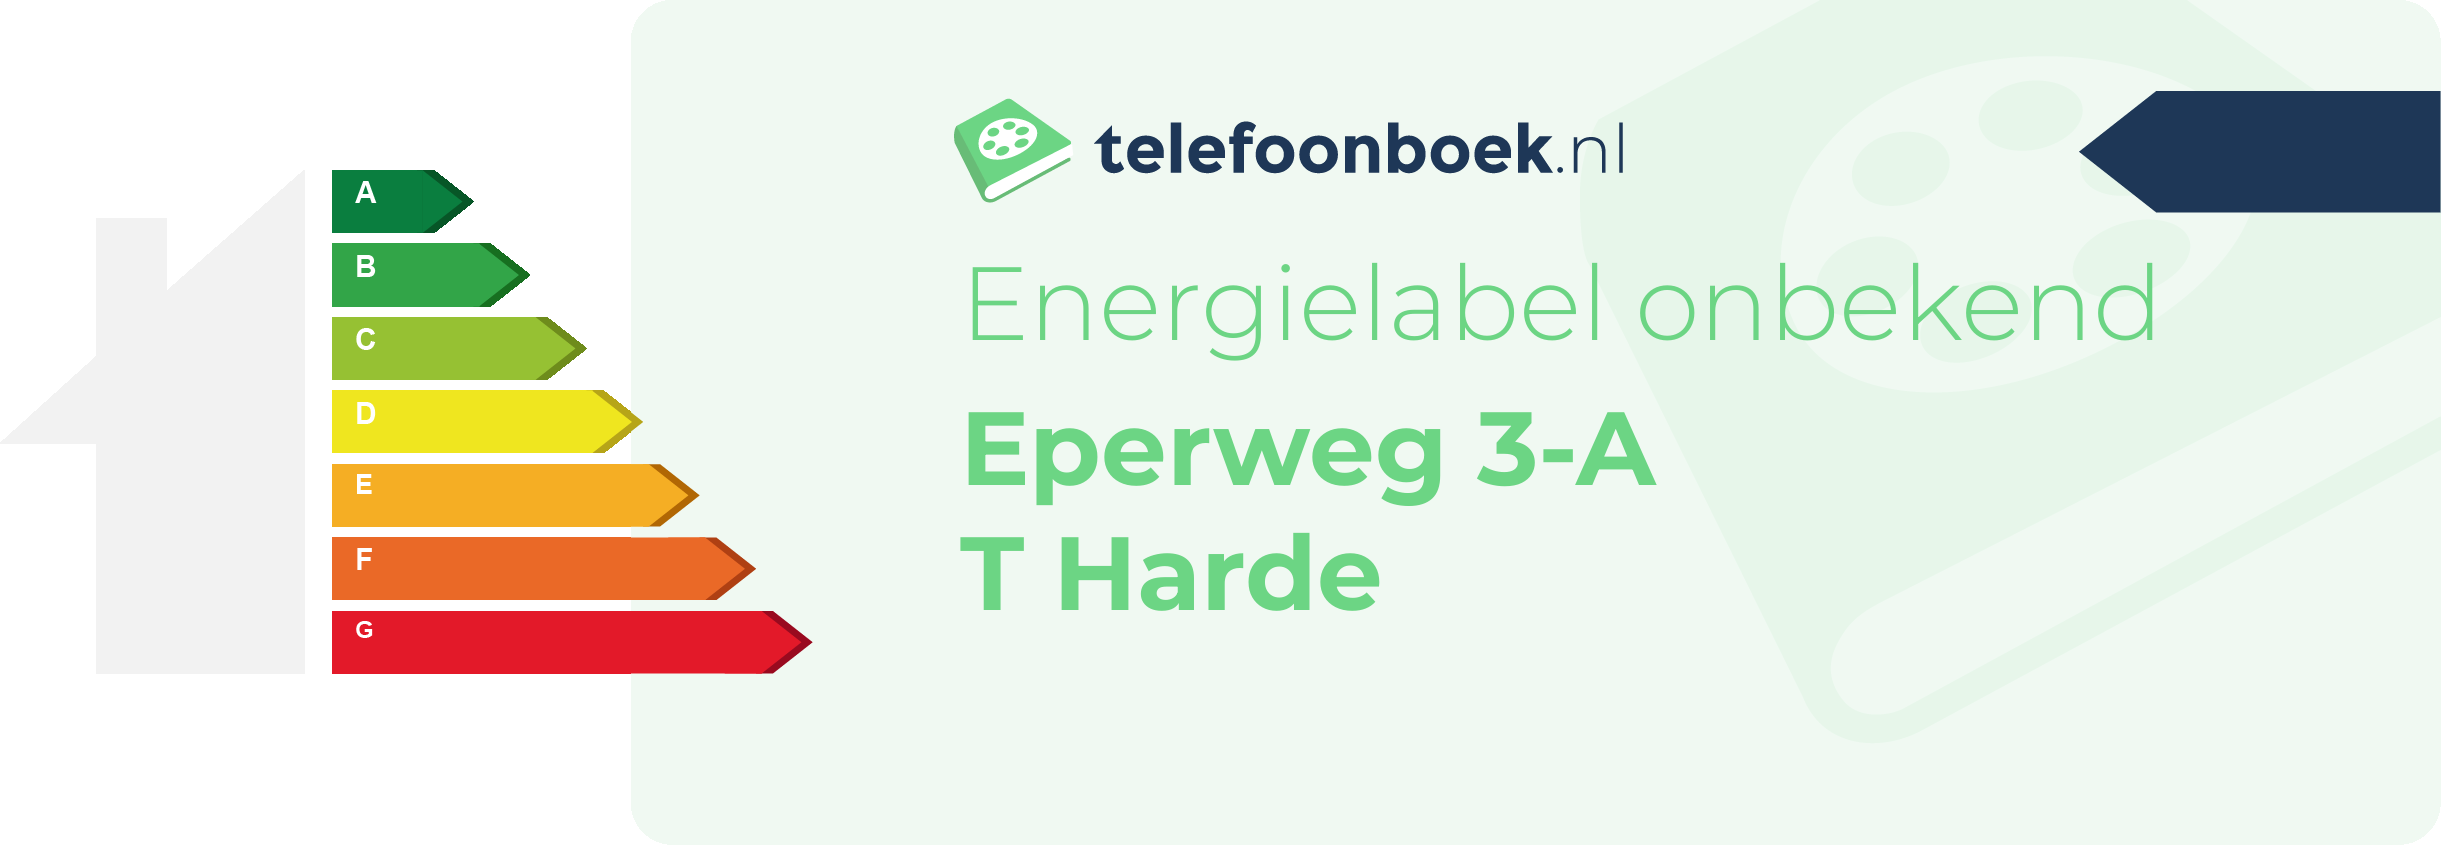 Energielabel Eperweg 3-A T Harde